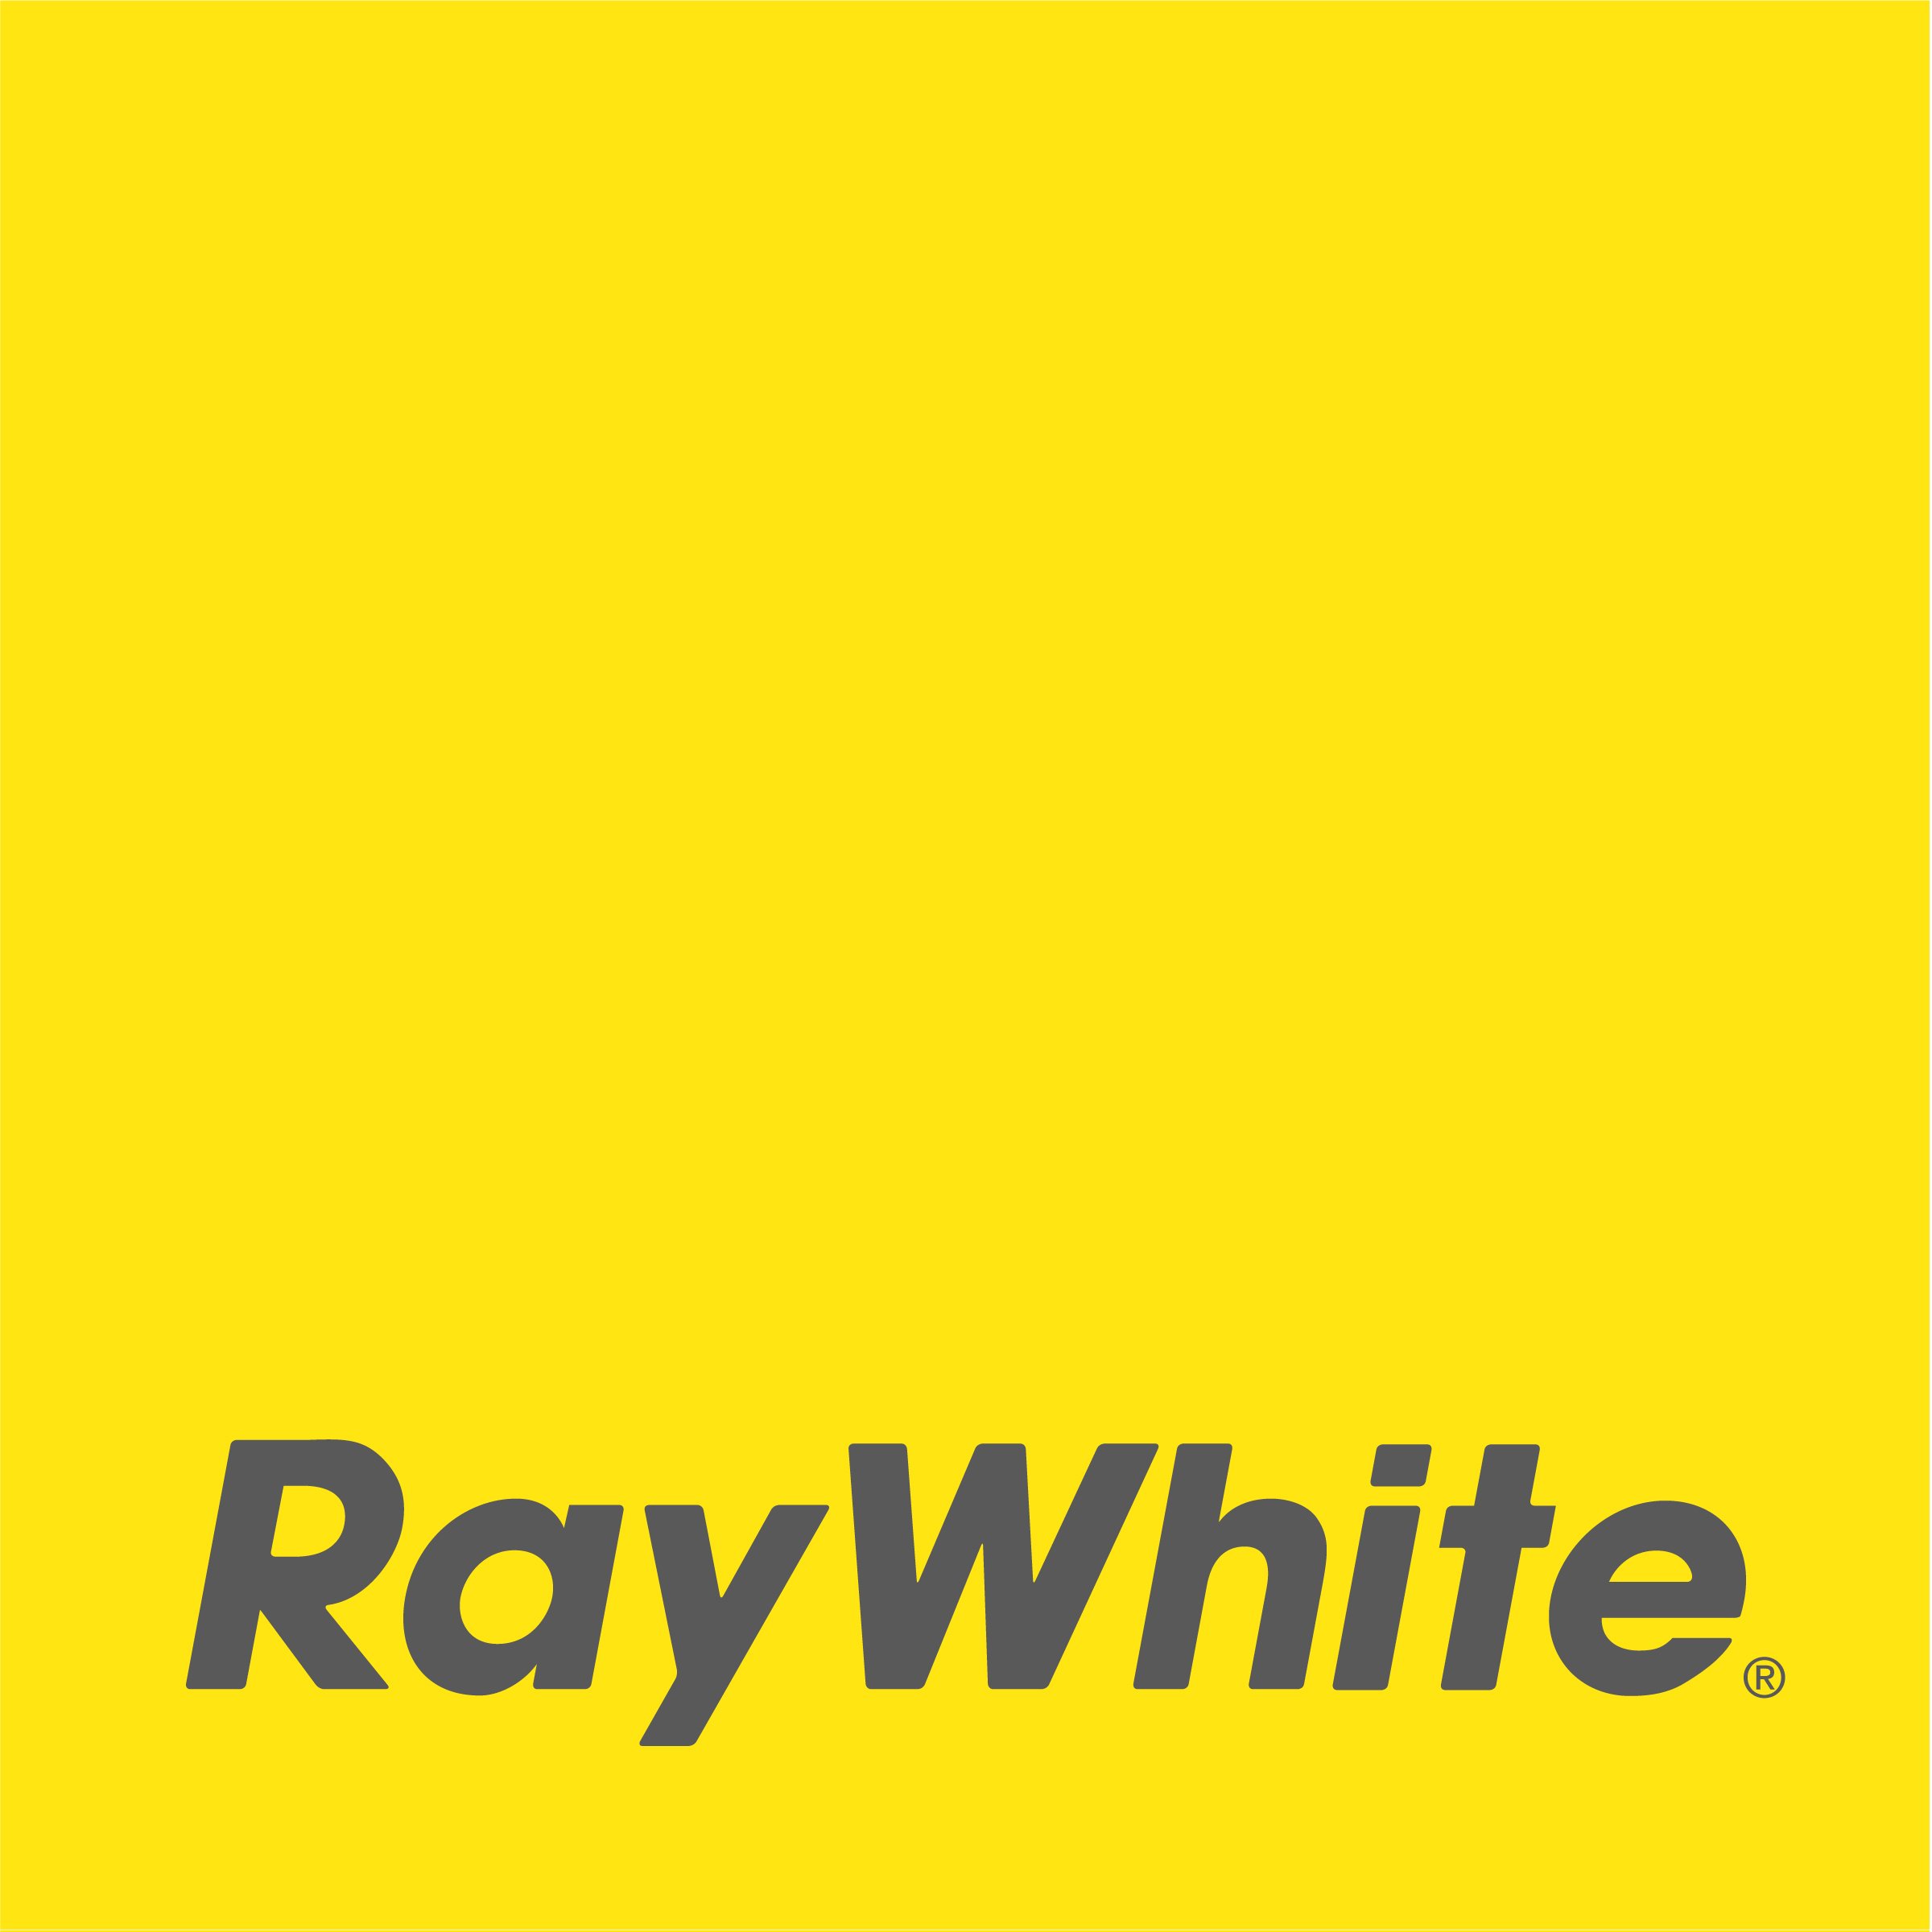 Ray White.jpg